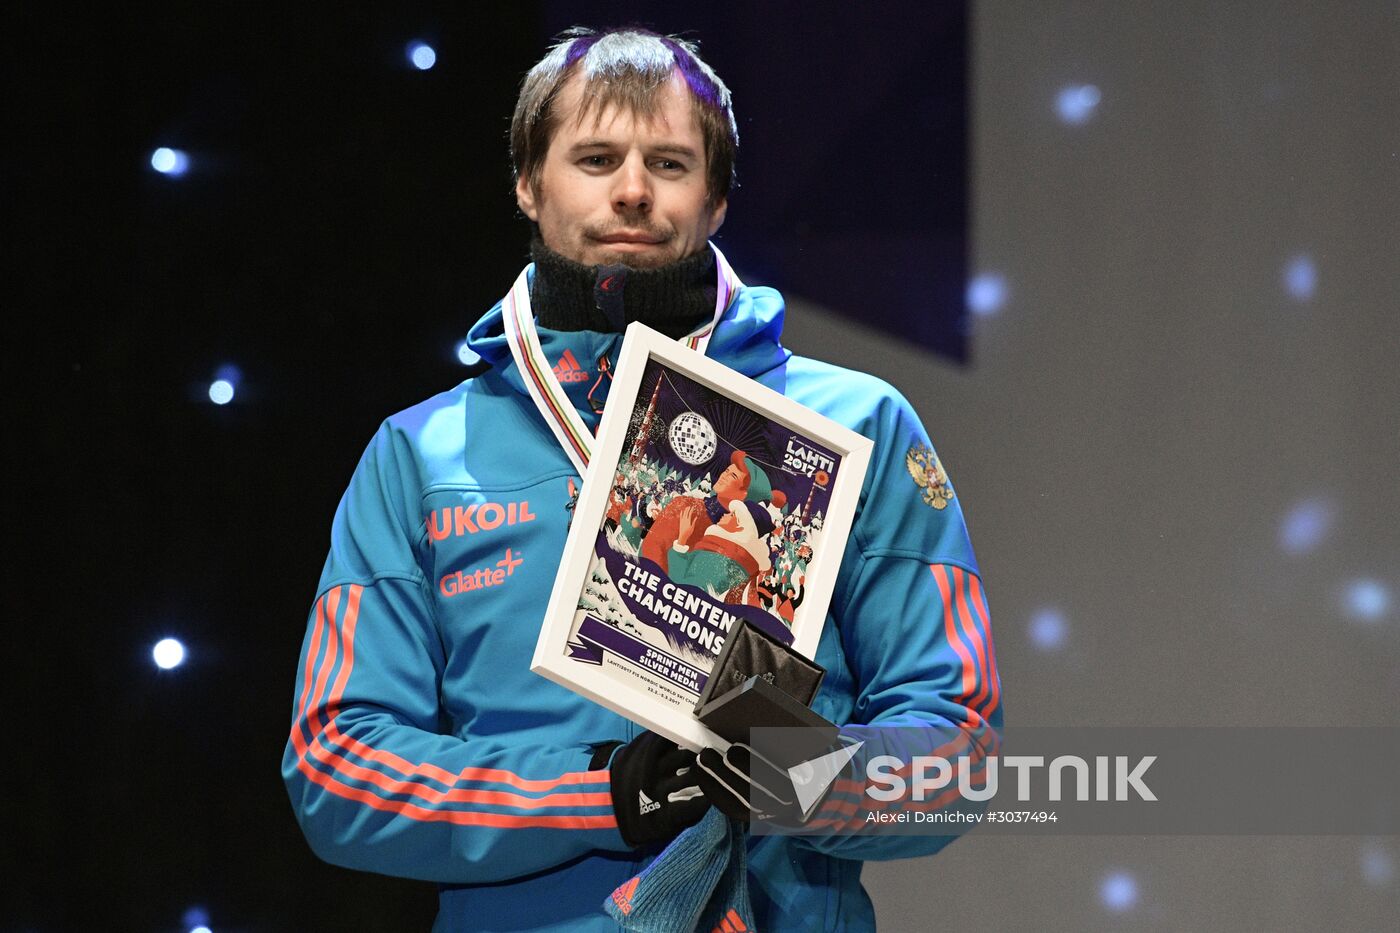 Nordic World Ski Championships. Men's sprint.